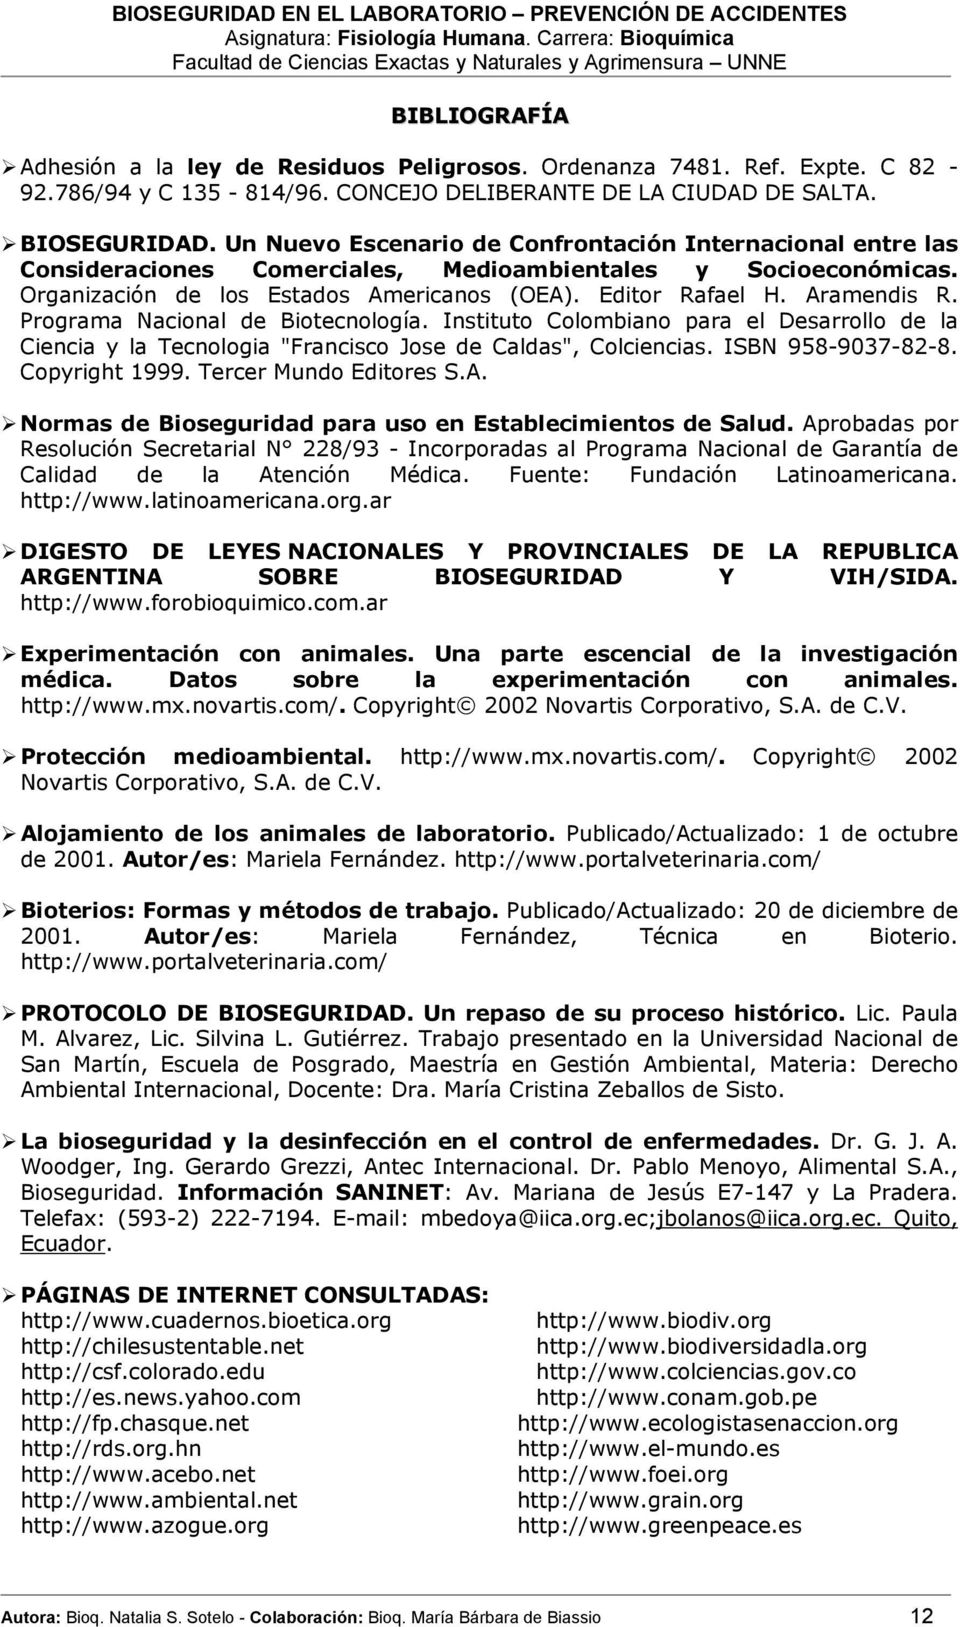 Programa Nacional de Biotecnología. Instituto Colombiano para el Desarrollo de la Ciencia y la Tecnologia "Francisco Jose de Caldas", Colciencias. ISBN 958-9037-82-8. Copyright 1999.